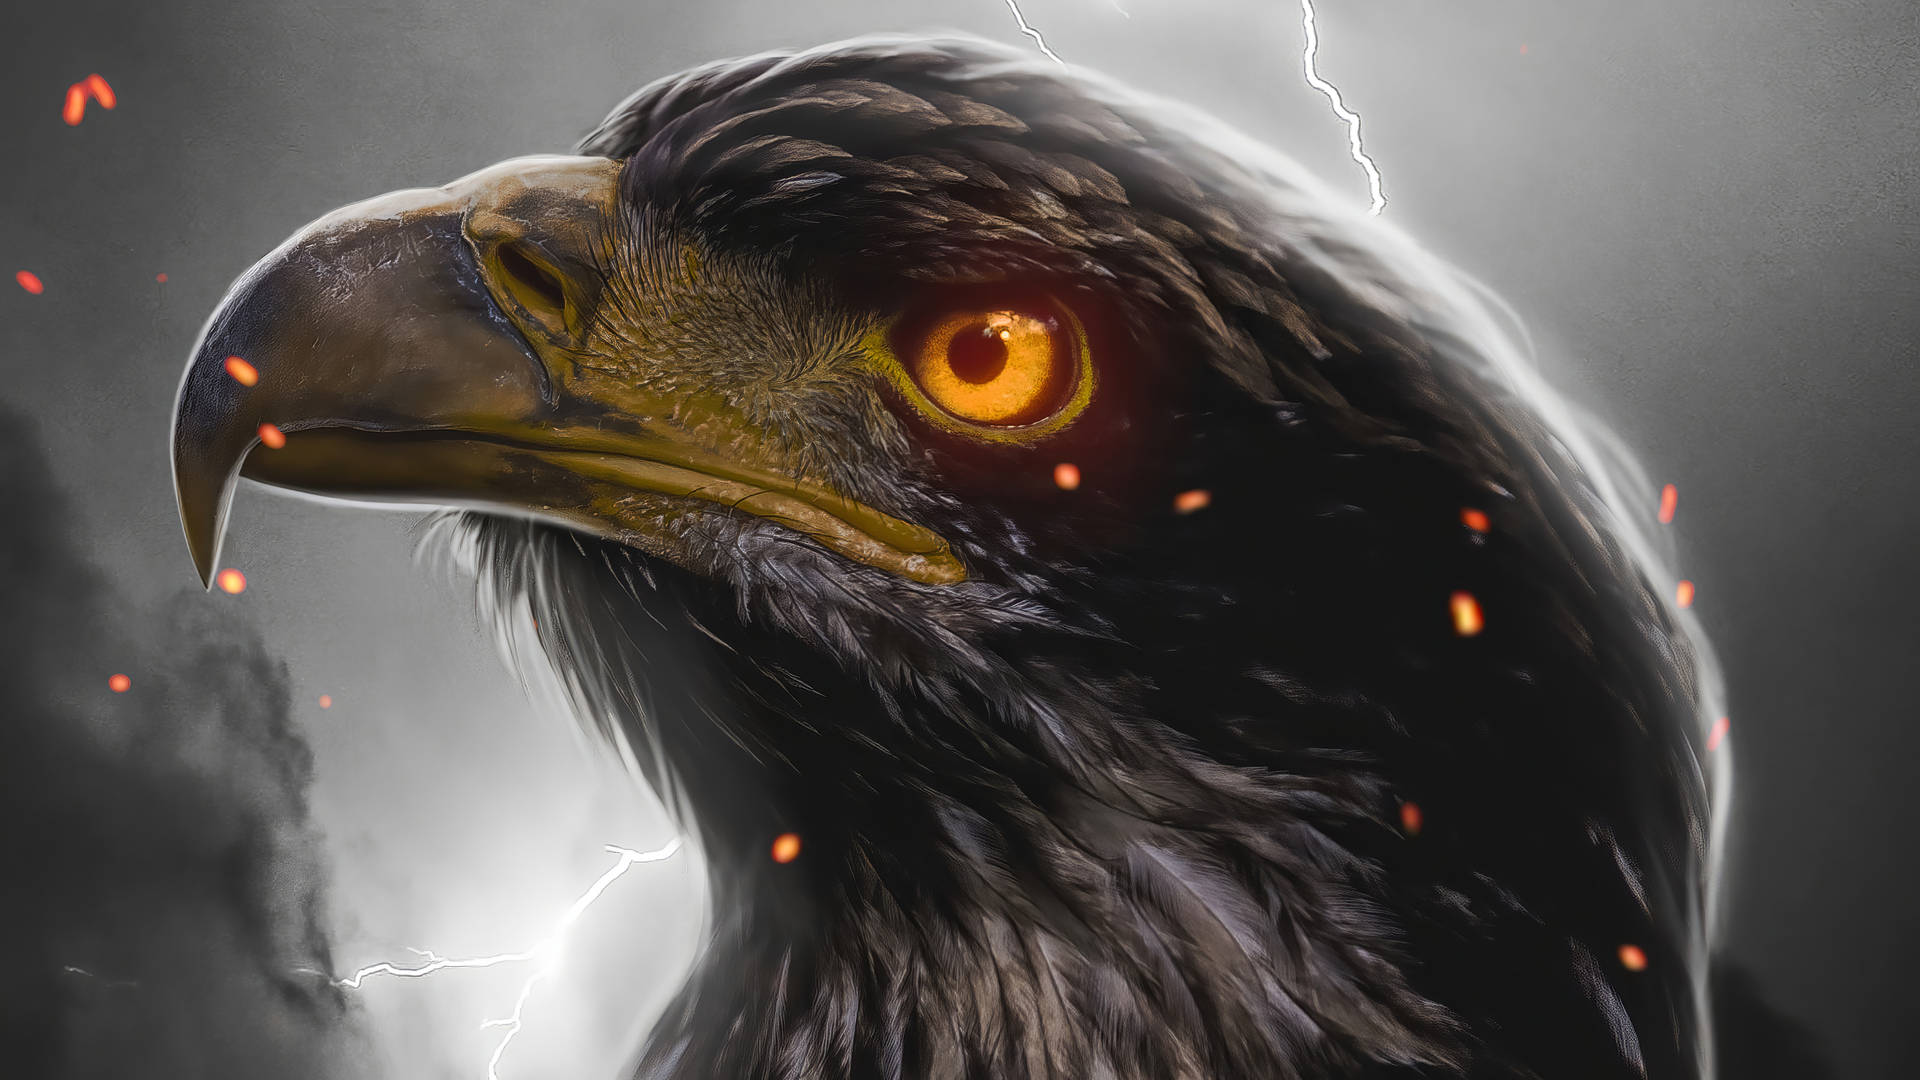 Aguila Glowing Golden Eye Digital Art Wallpaper